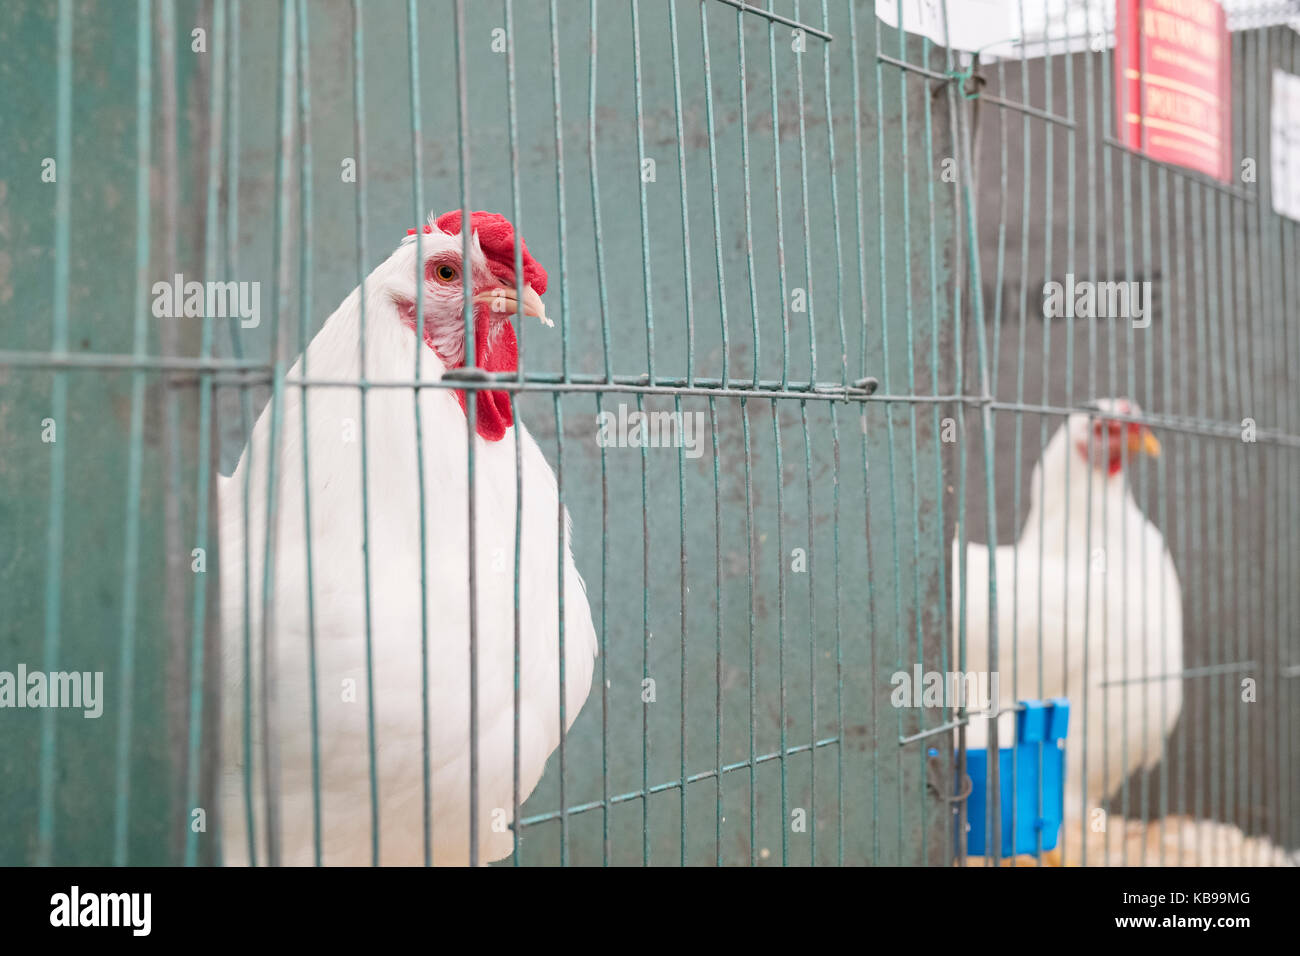 Weiß wyandotte Hühner in Käfigen bei Malvern Herbst Show gezeigt wird. Worcestershire, Großbritannien Stockfoto